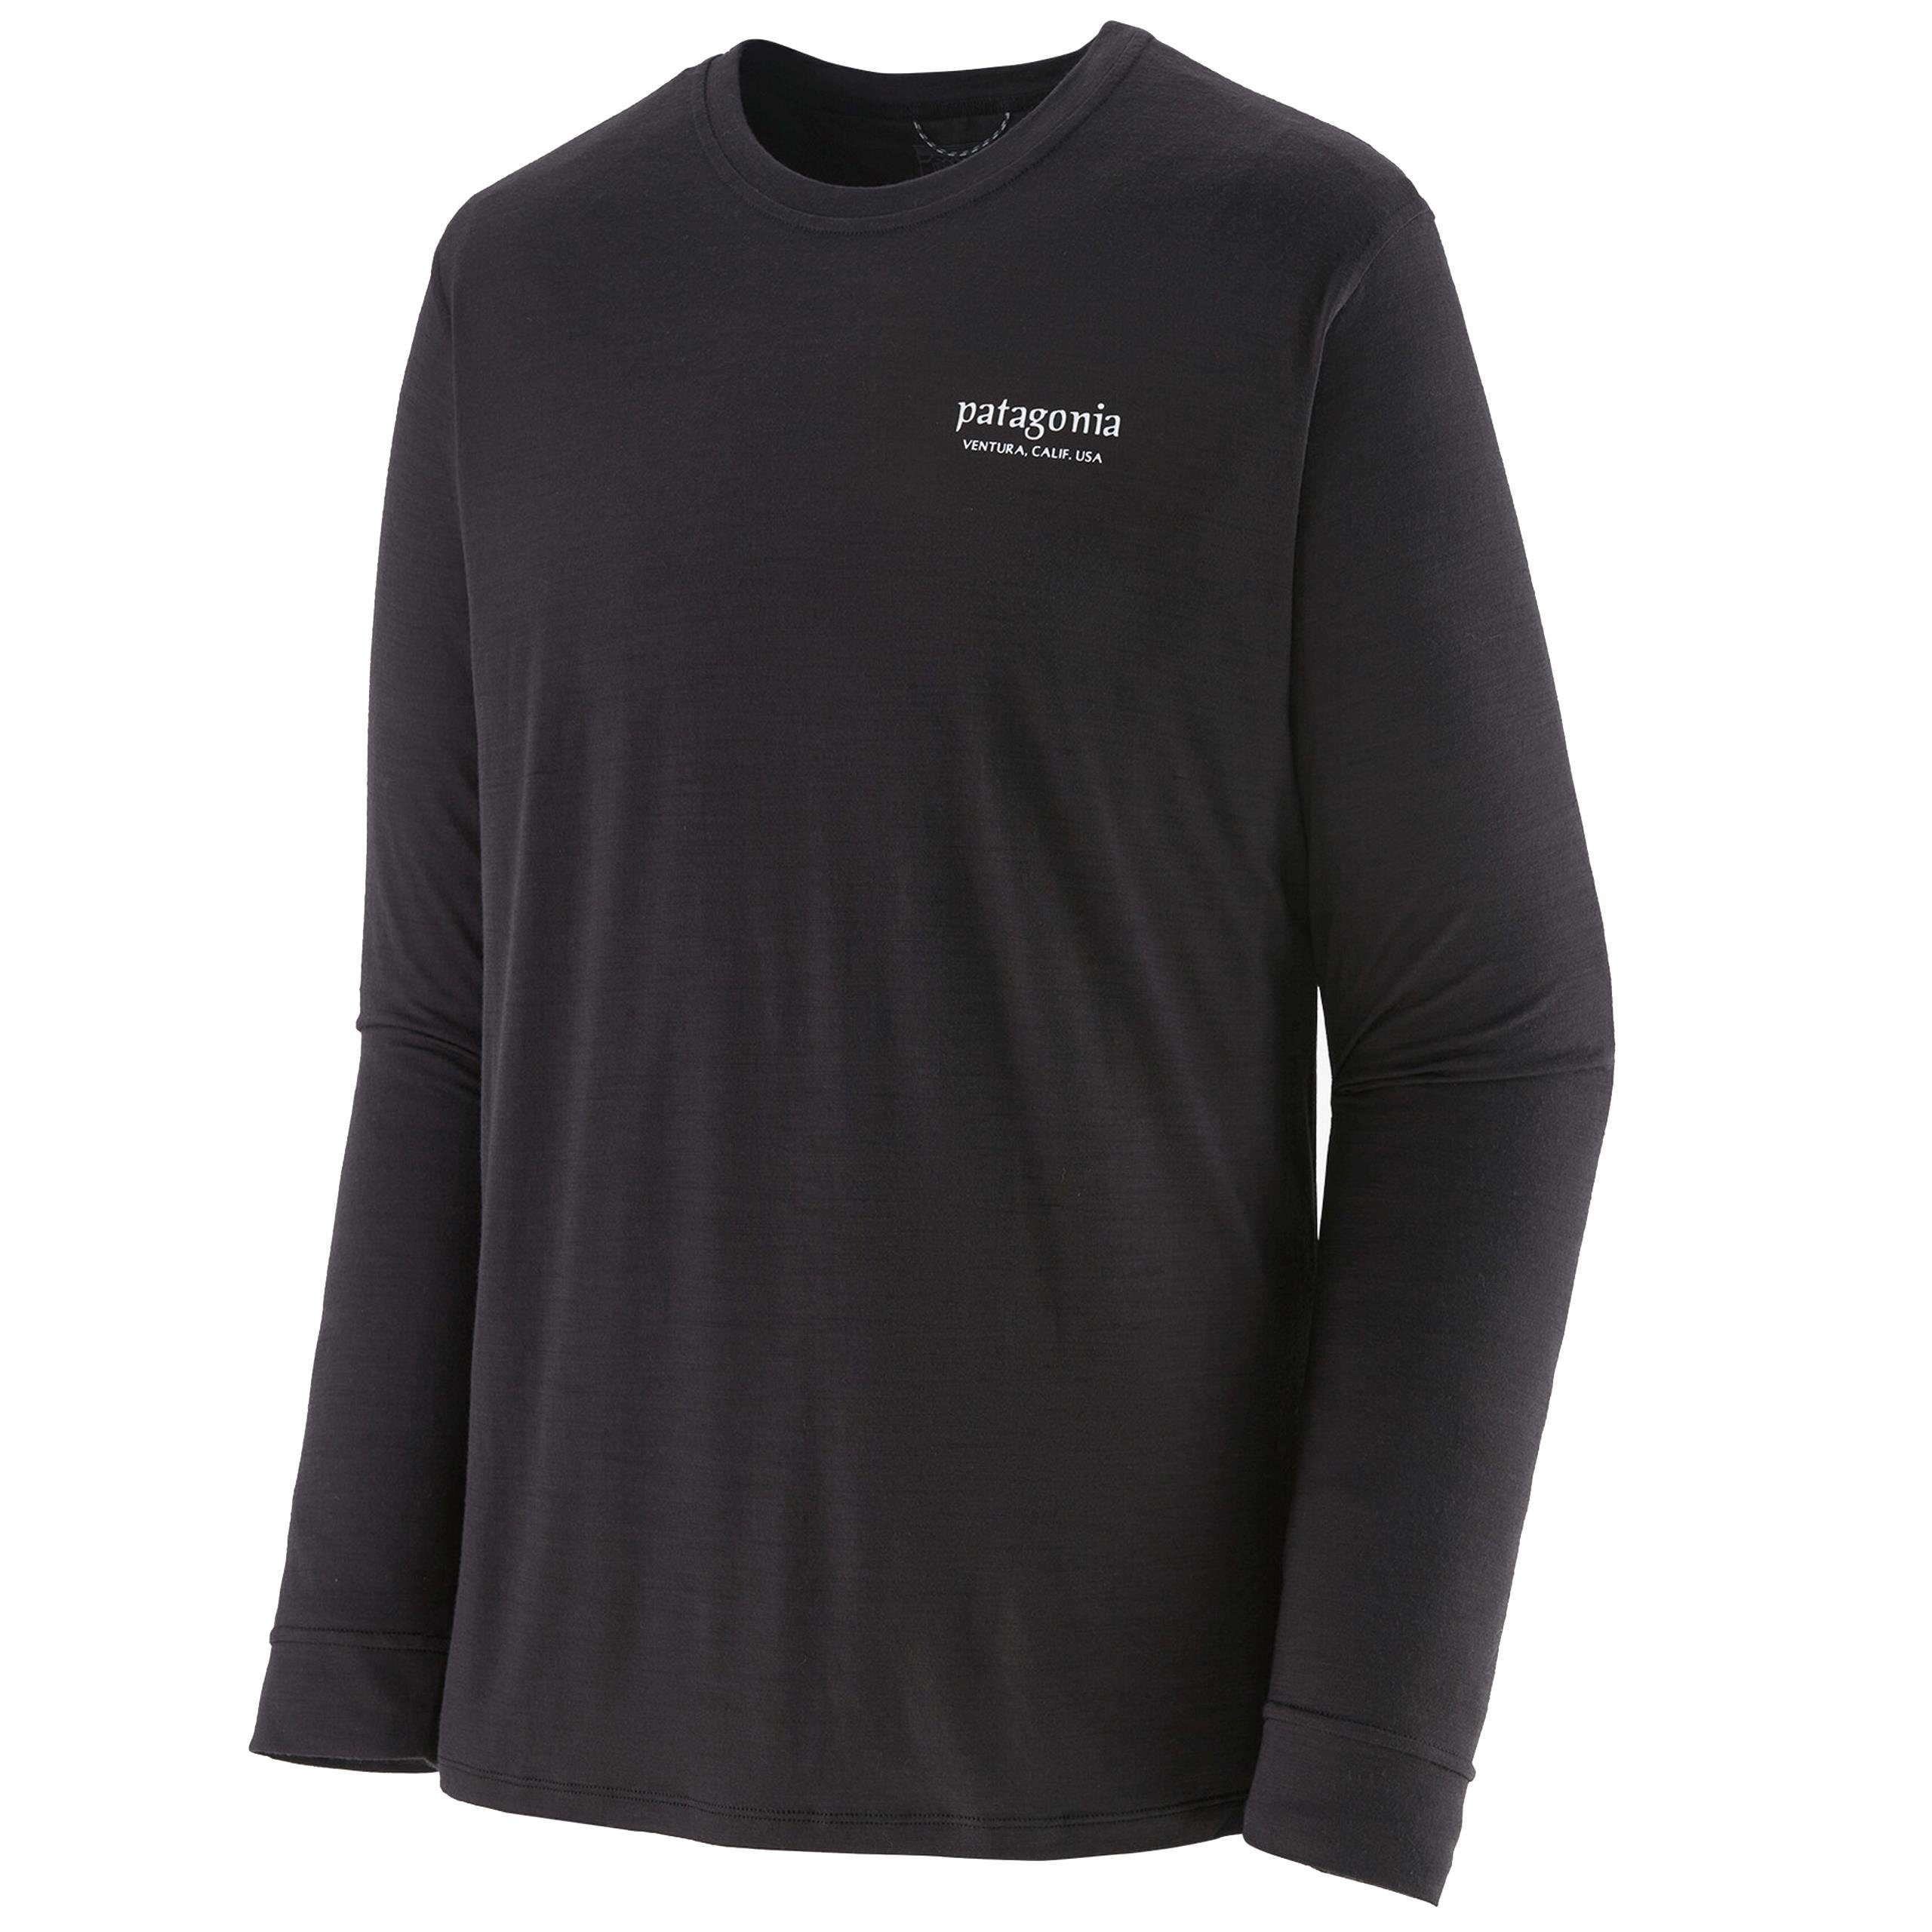 Long-Sleeved Mens Patagonia Merino Merin Shirt Graphic - Cool black Patagonia Capilene Langarmshirt